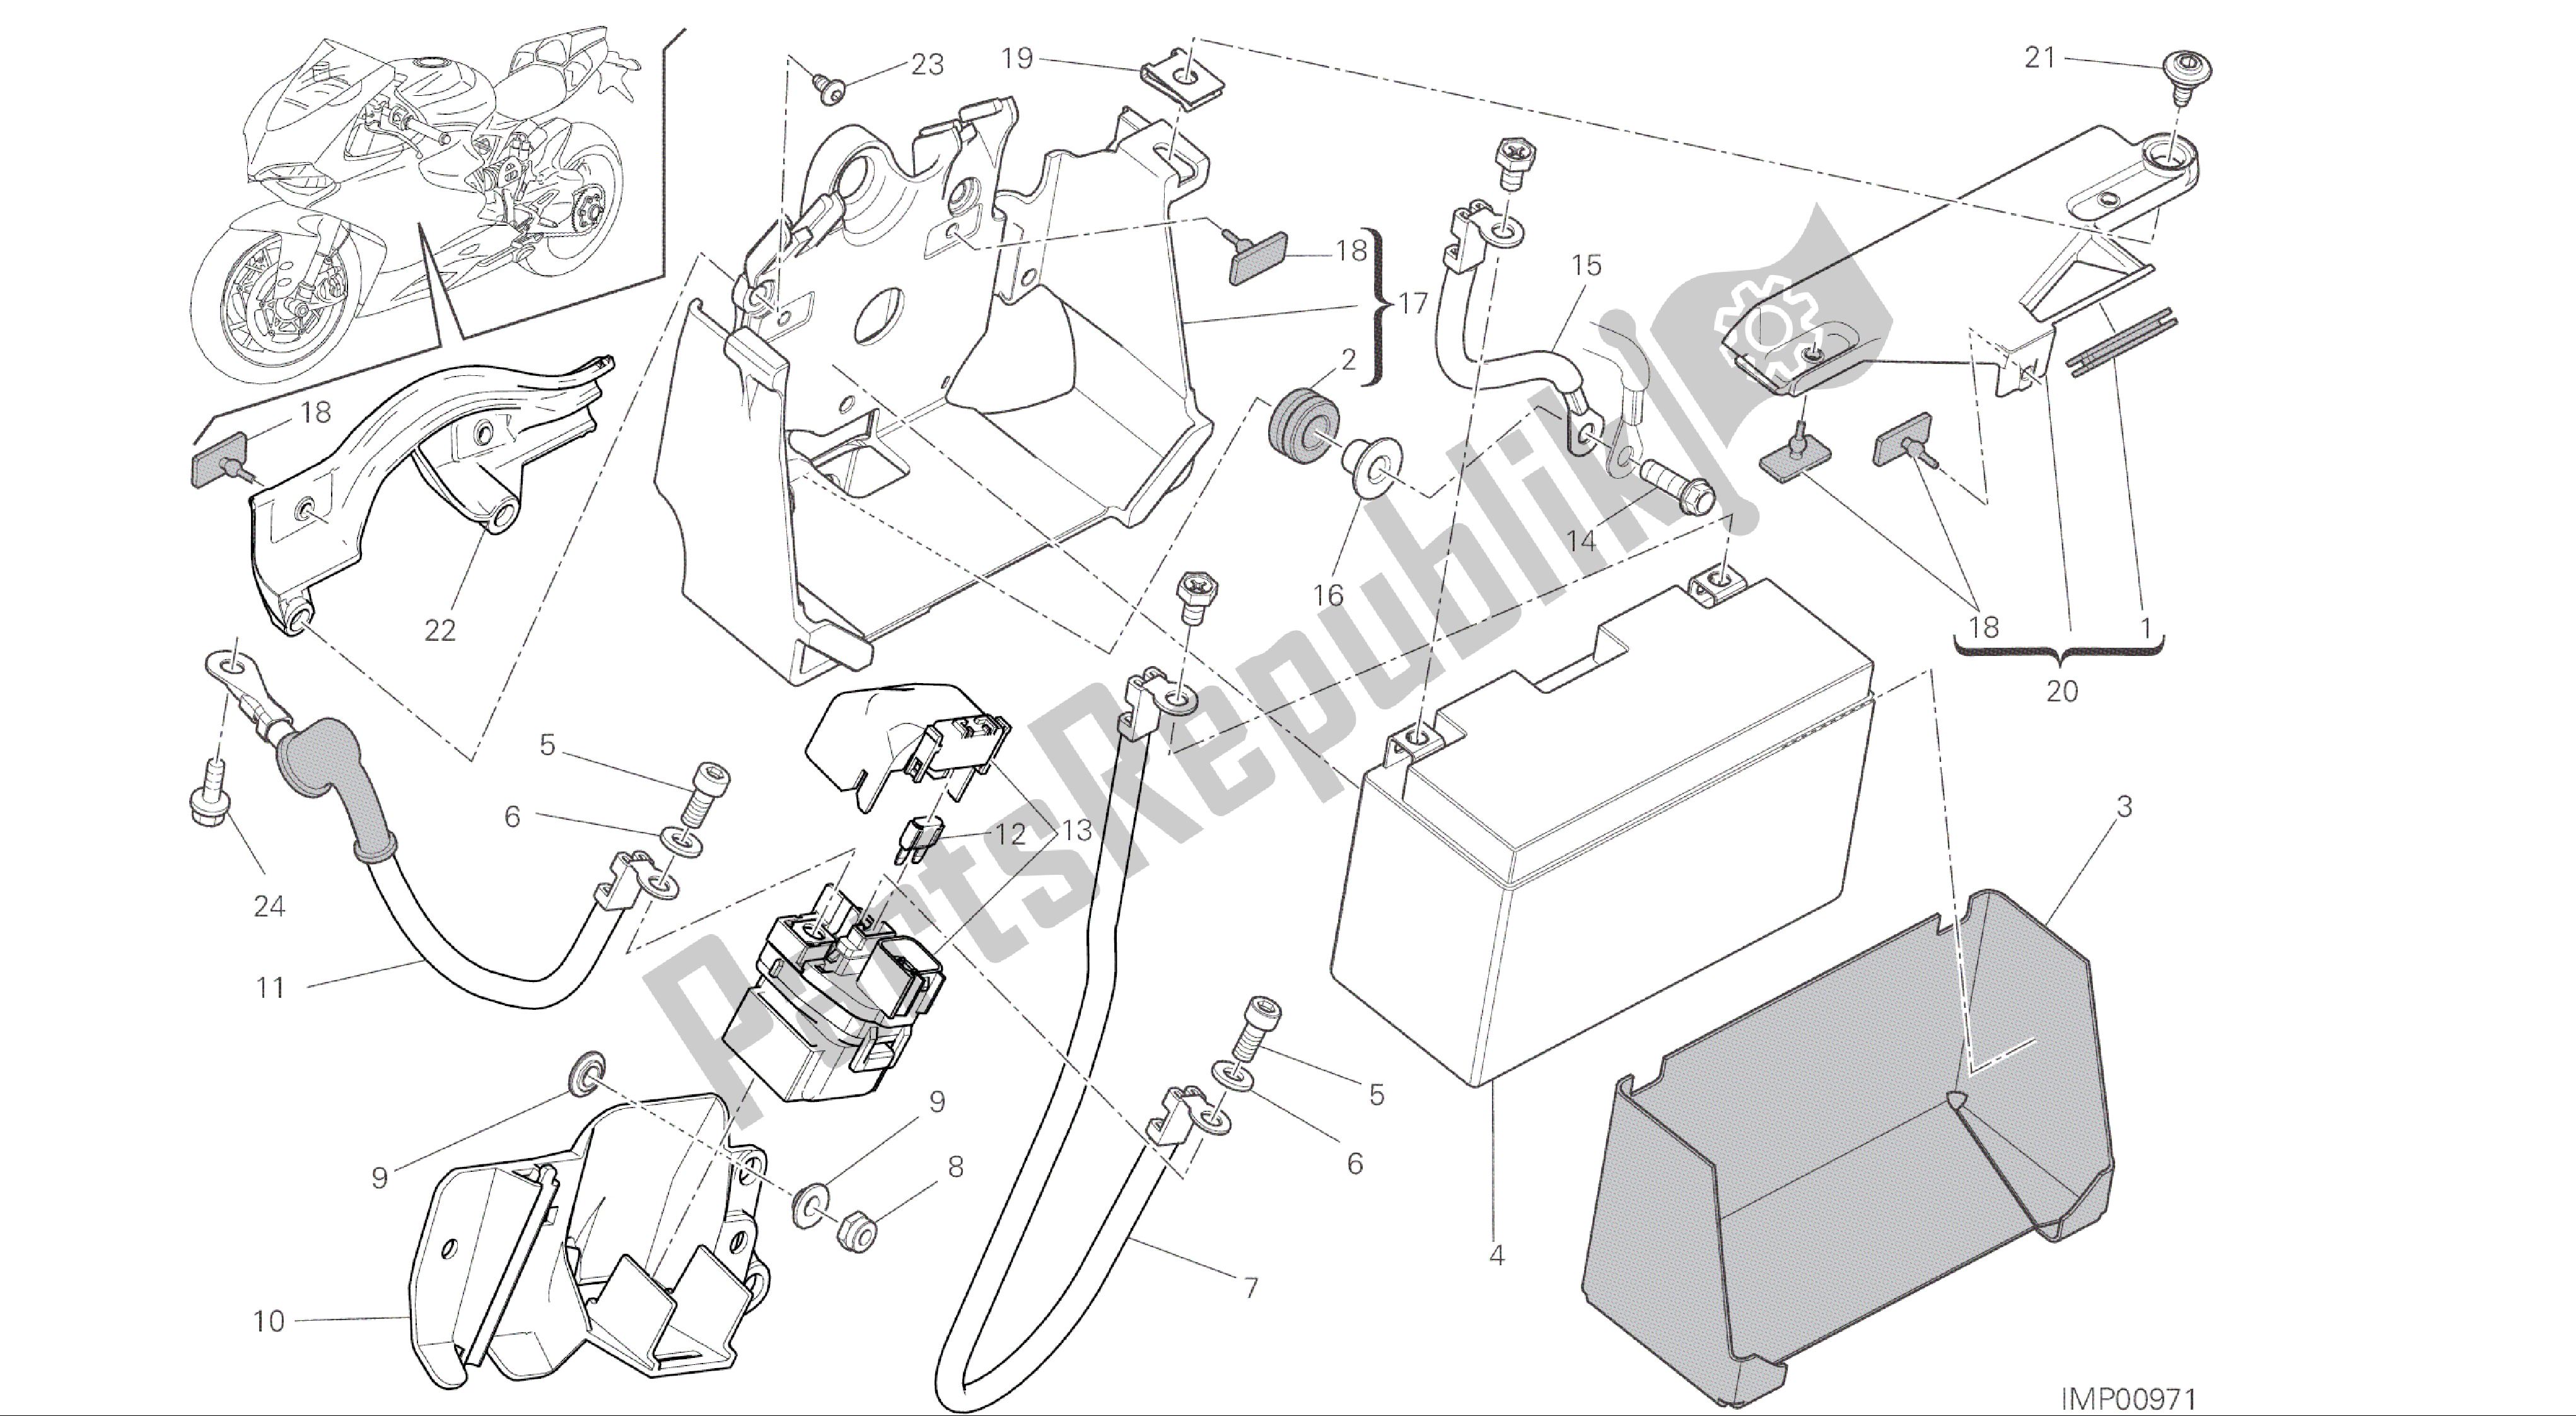 Todas las partes para Dibujo 18a - Soporte De Batería [mod: 1199 R; Xst: Aus, Eur, Fra, Jap, Twn] Group Electric de Ducati Panigale R 1200 2016